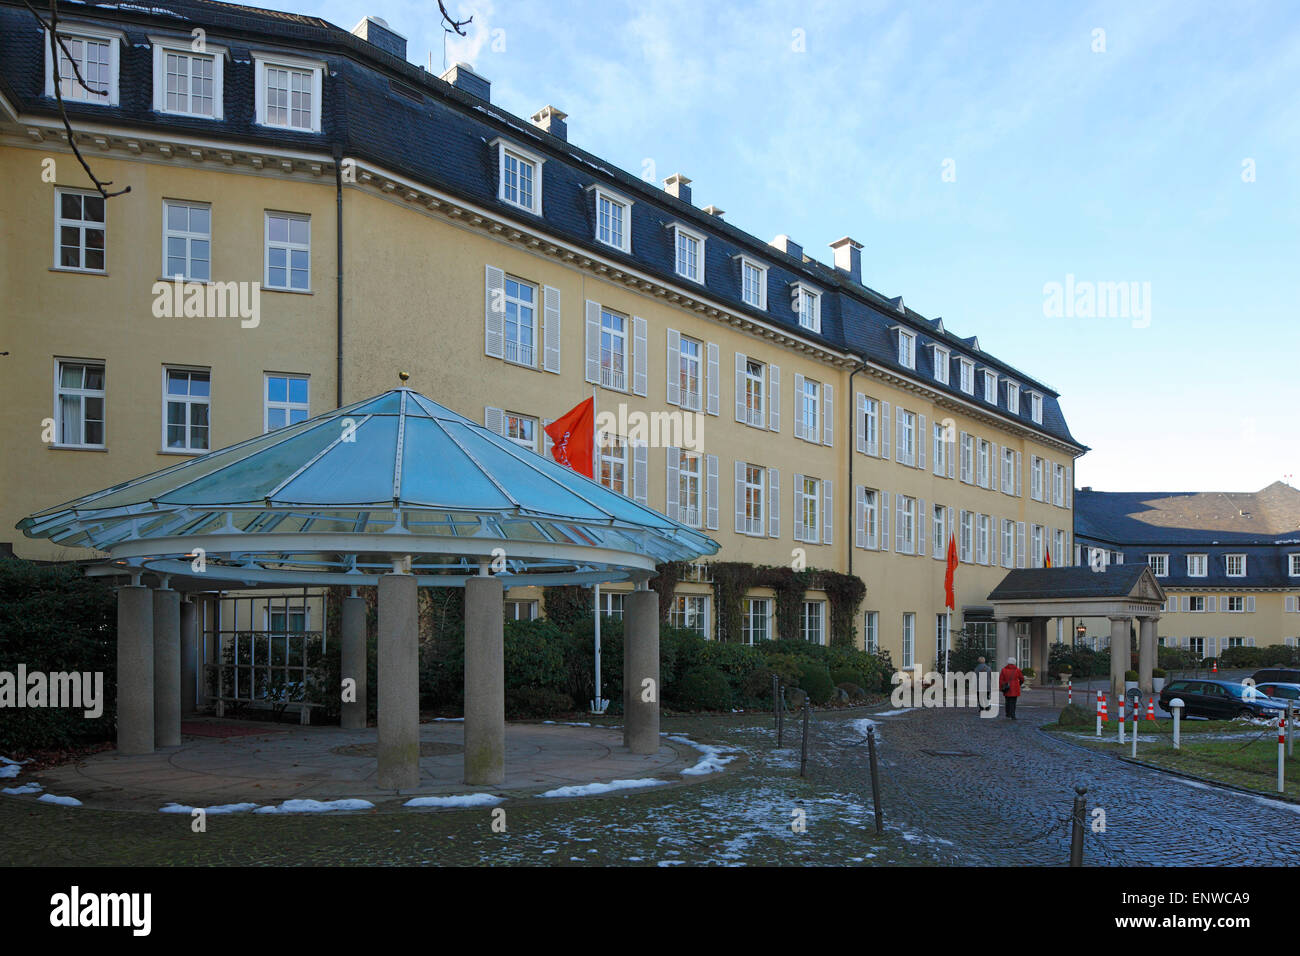 Steigenberger Grand Hotel auf dem Petersberg im Siebengebirge, Gaestehaus der Bundesregierung, Koenigswinter am Rhein Stock Photo